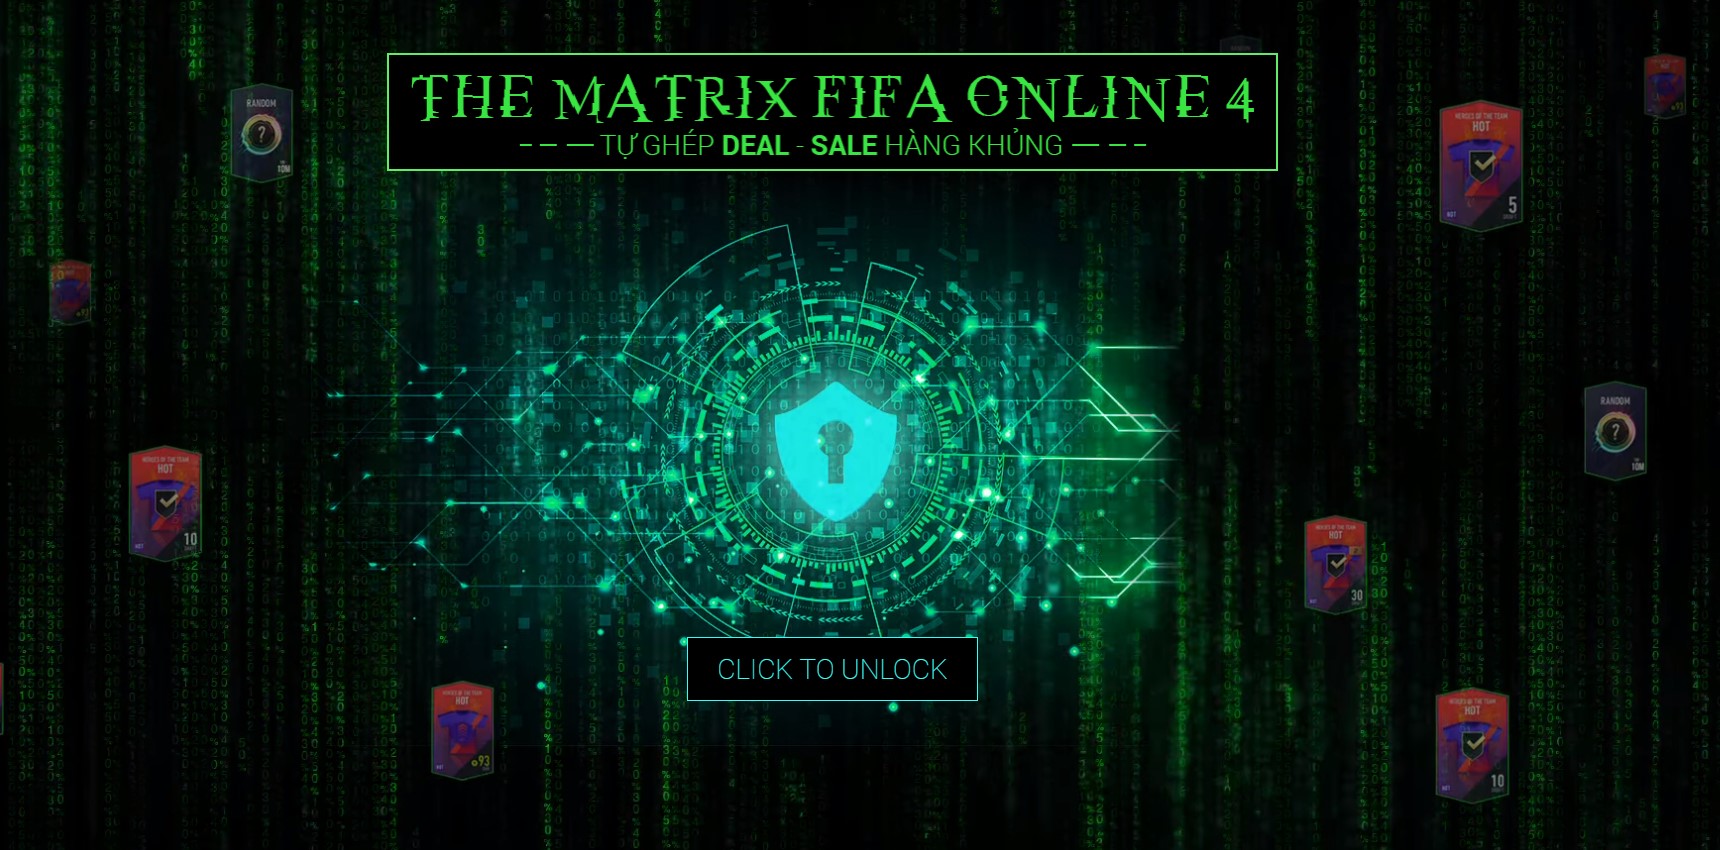 FIFA Online 4: Chào mừng đến với thế giới bóng đá sống động cùng FIFA Online 4! Điều đặc biệt hơn nữa là bạn có thể thỏa sức cùng đội bóng yêu thích của mình và tham gia các giải đấu kịch tính. Cùng xem ảnh để thấy sự hấp dẫn của FIFA Online 4 nhé!